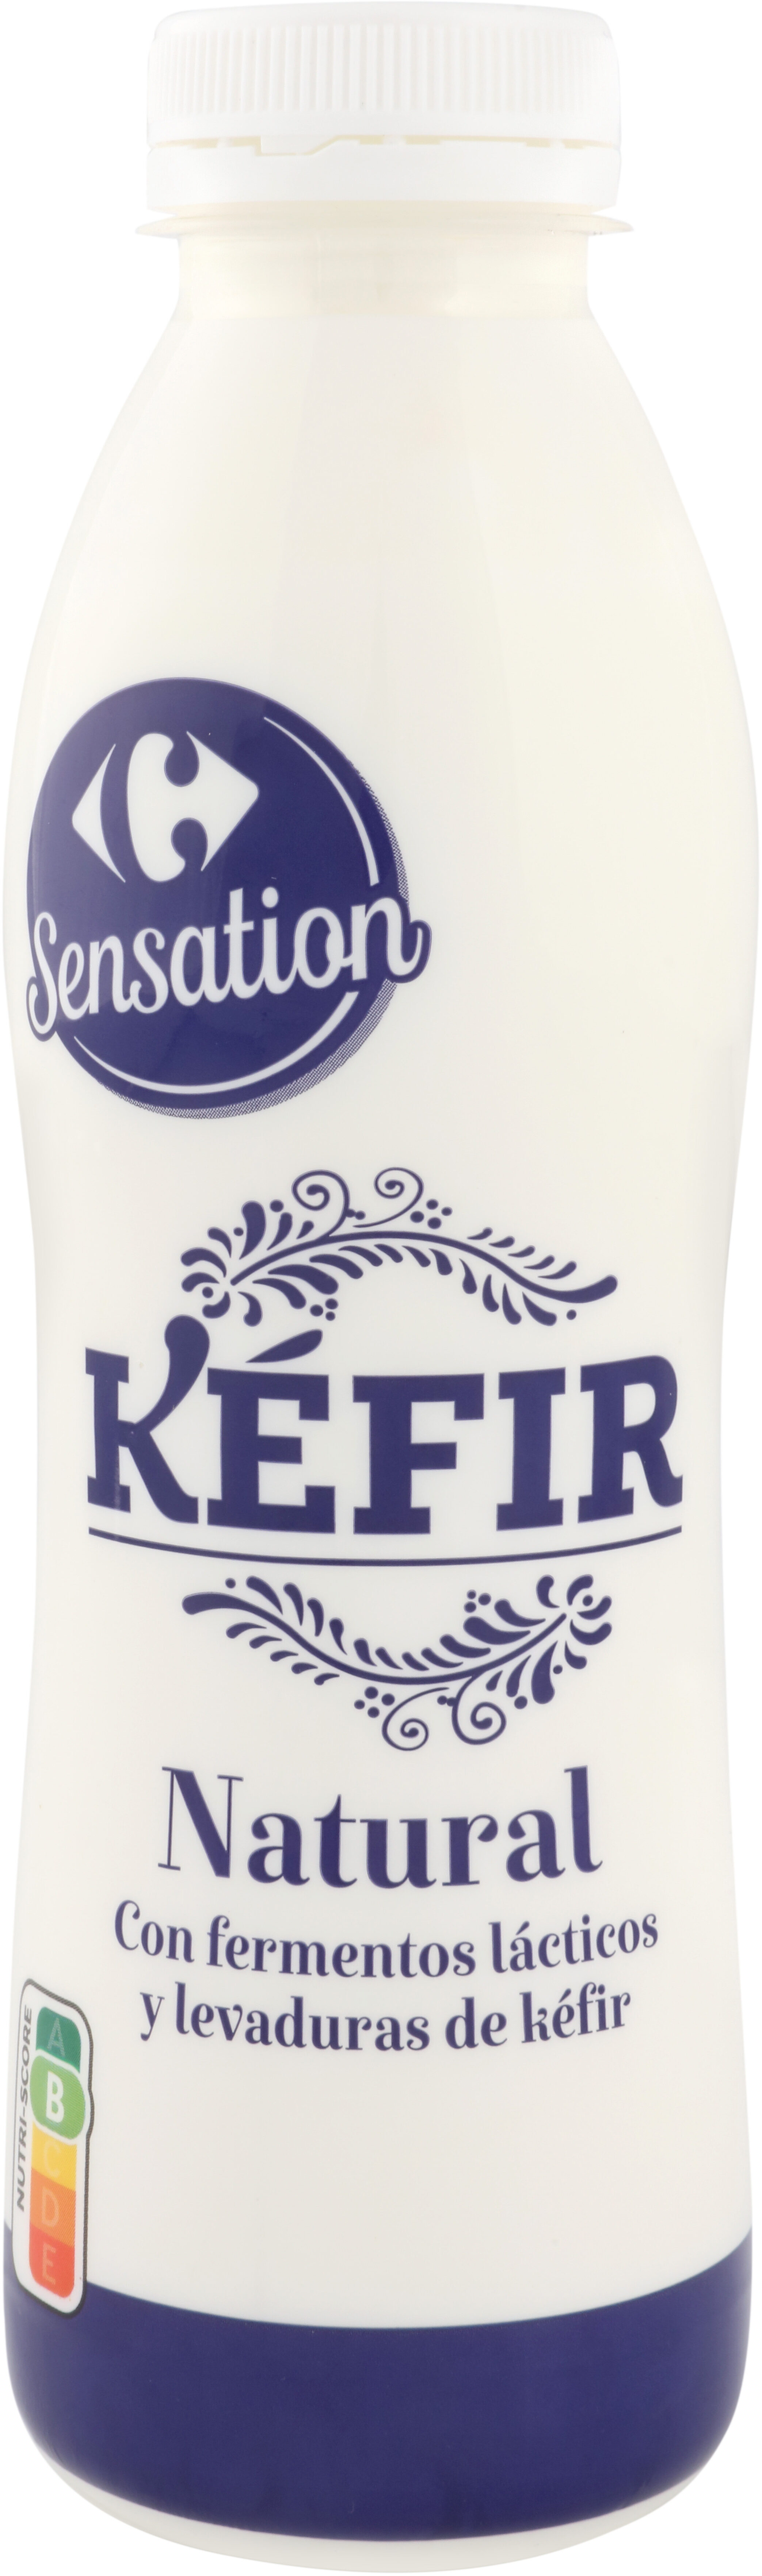 Kefir Liquido Natural - Produit - es